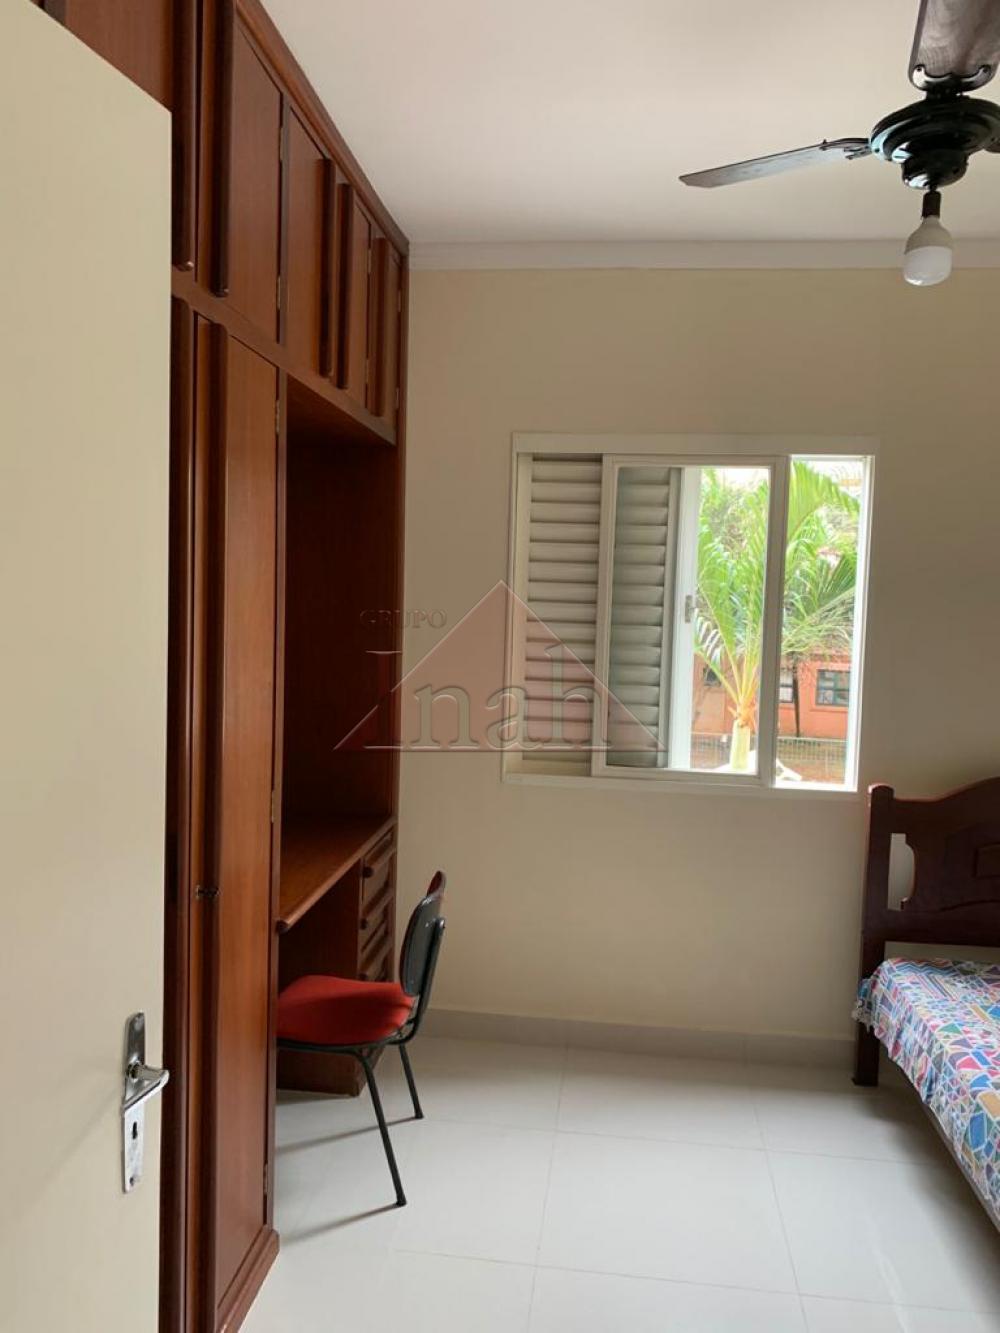 Alugar Apartamentos / Apartamento em Ribeirão Preto R$ 1.650,00 - Foto 11